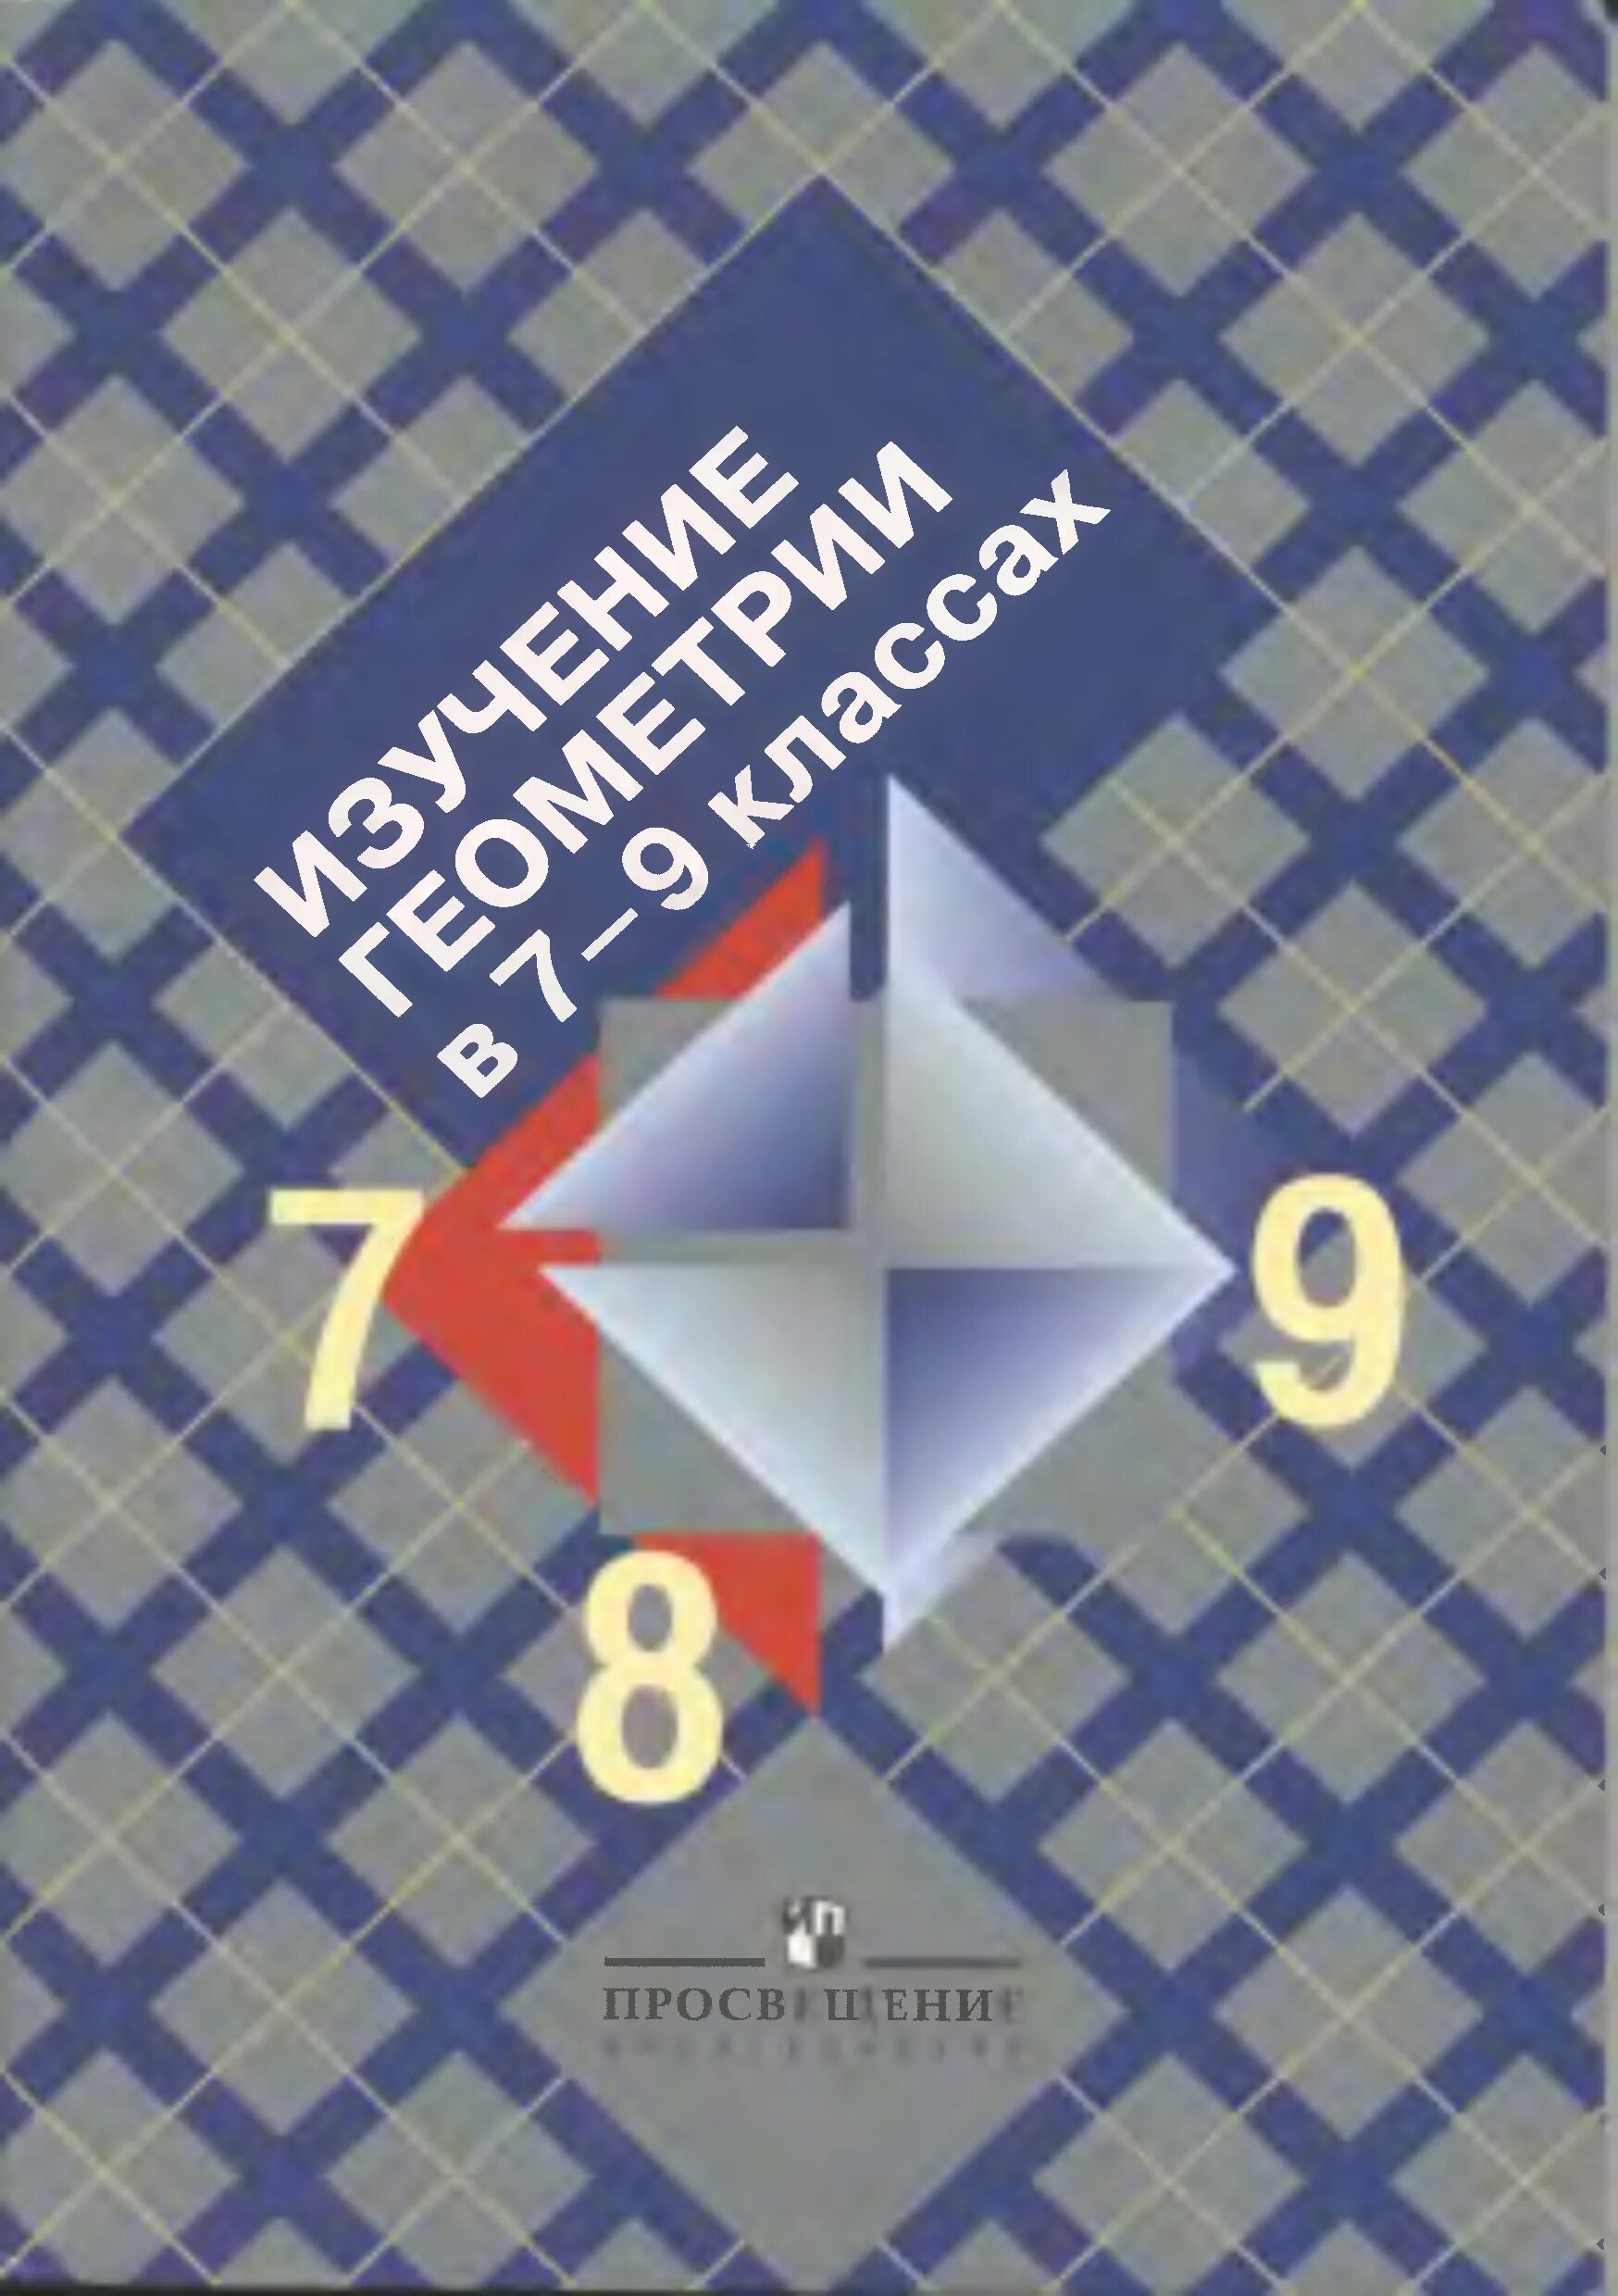 Атанасян алгебра 7 9 учебник. Изучение геометрии в 7-9 классах пособие. Пособие для учителя по геометрии. Изучение геометрии Просвещение.